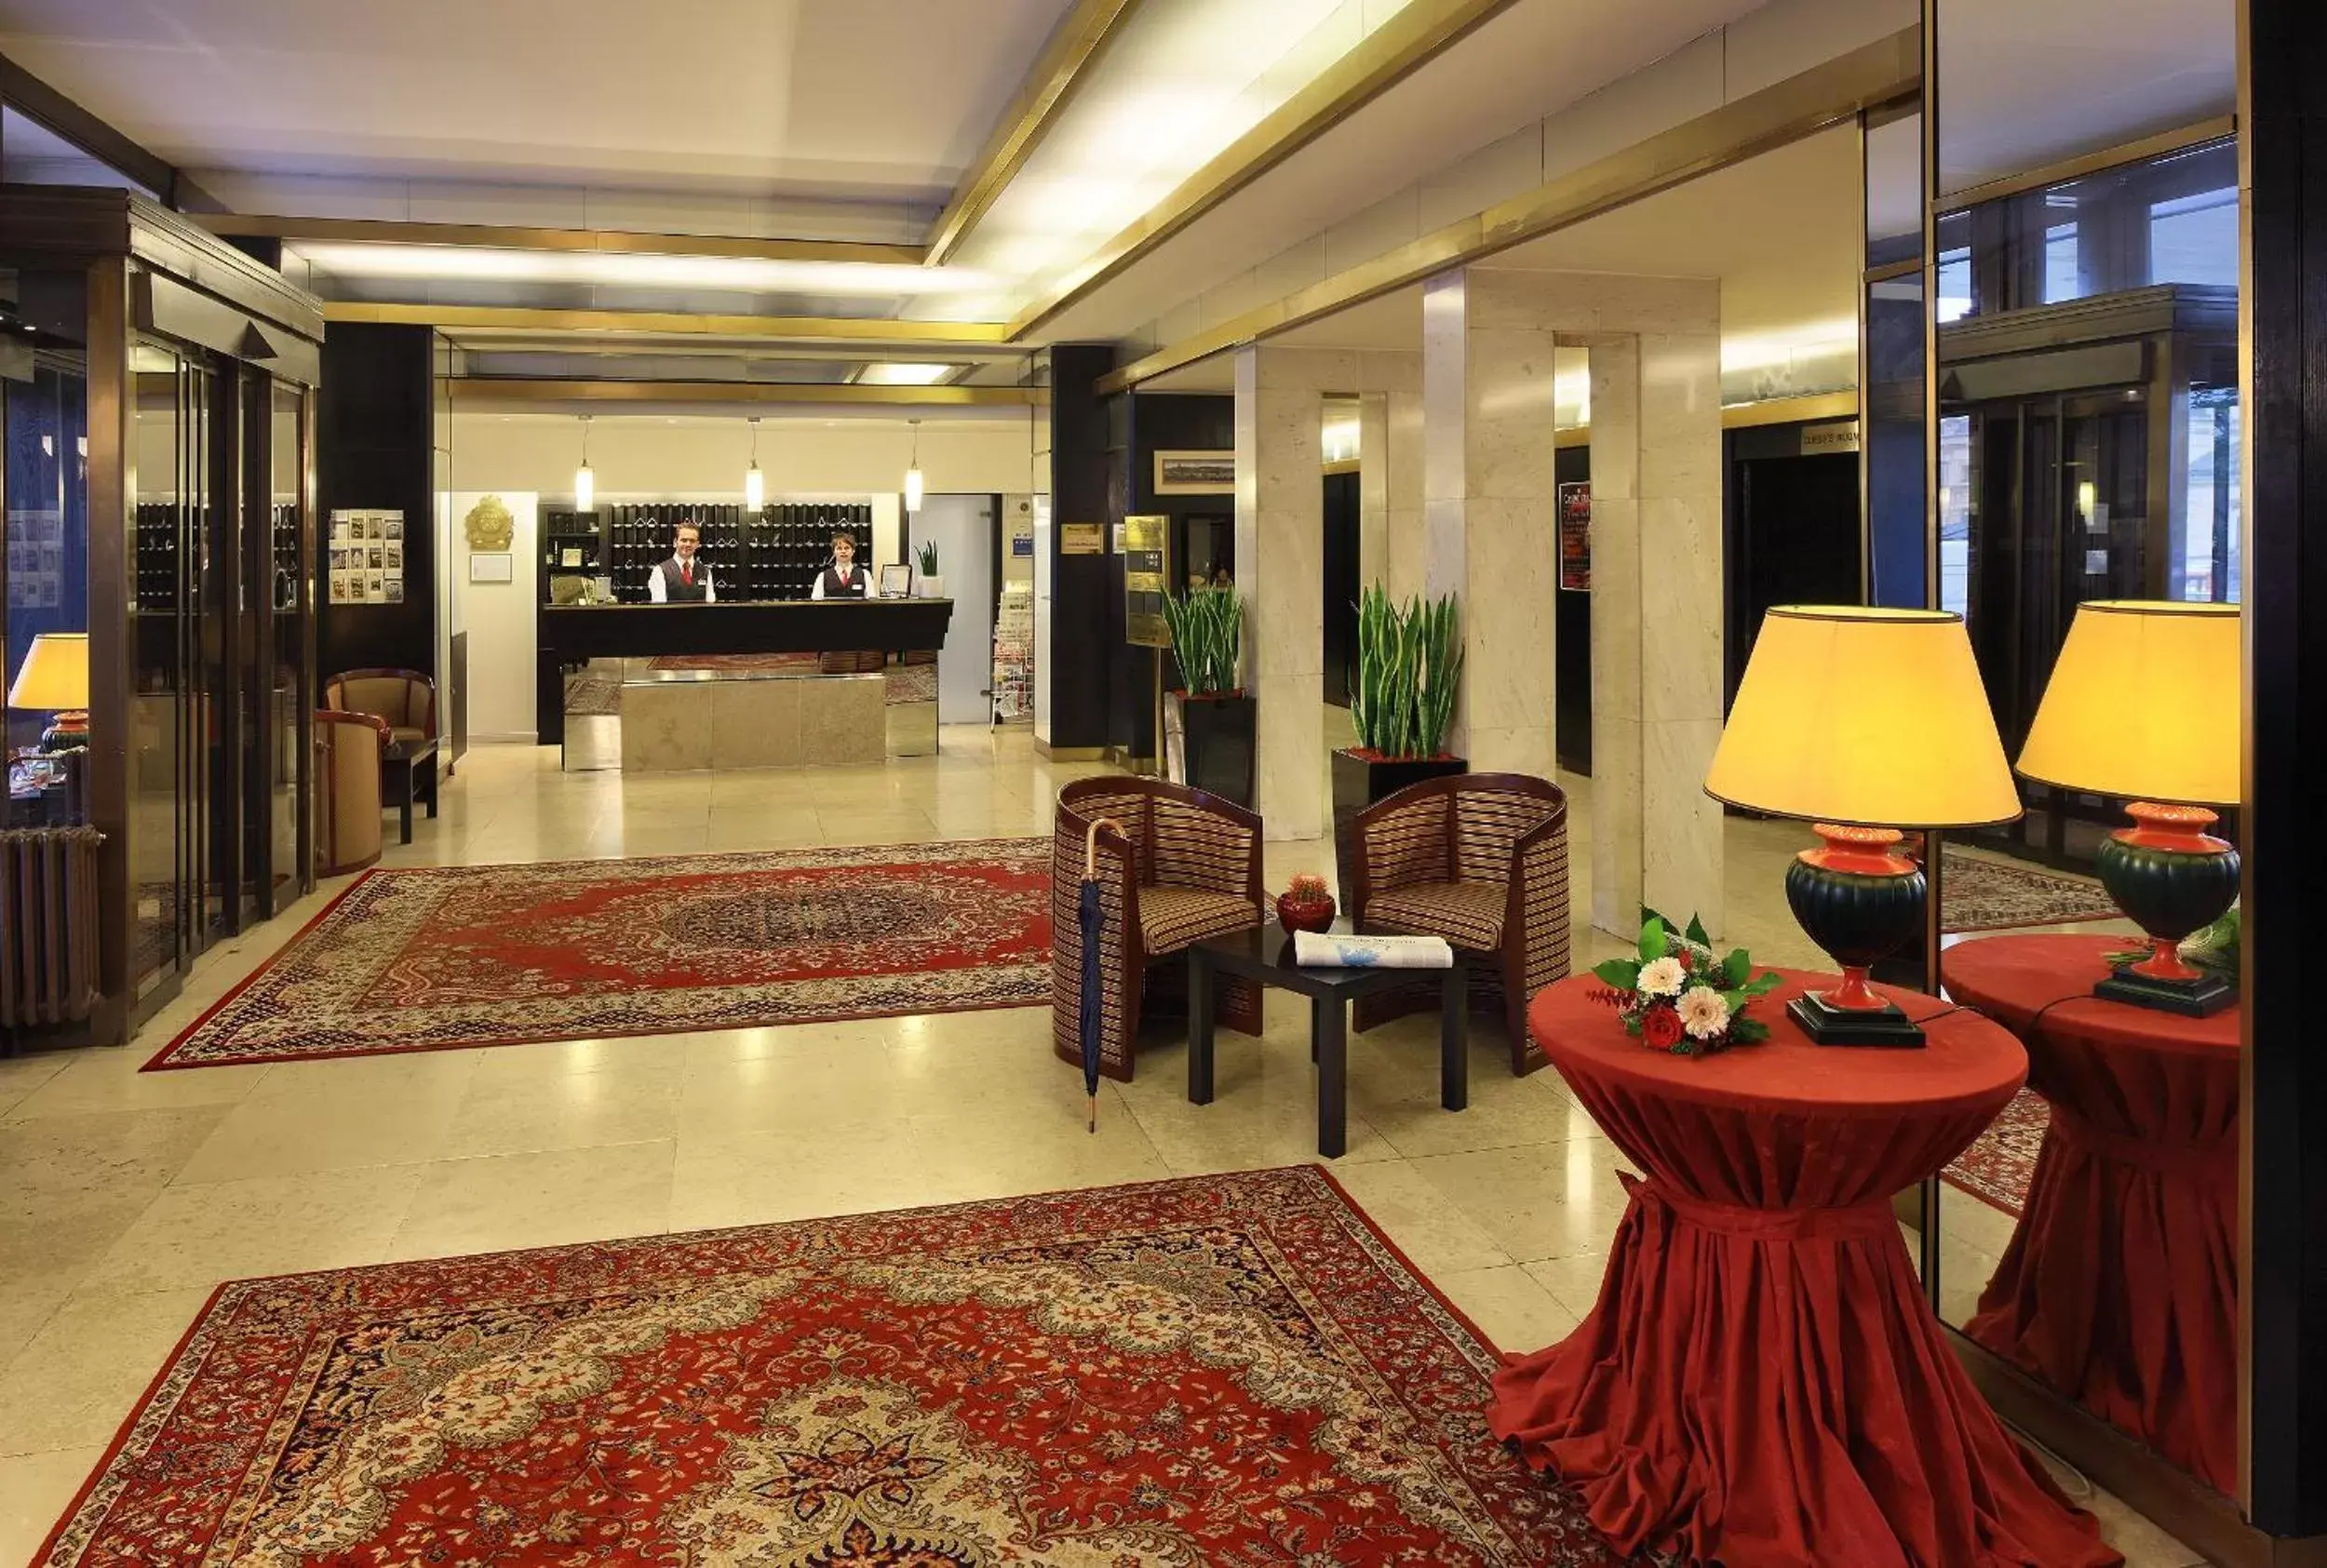 Lobby or reception, Lobby/Reception in Grandhotel Brno